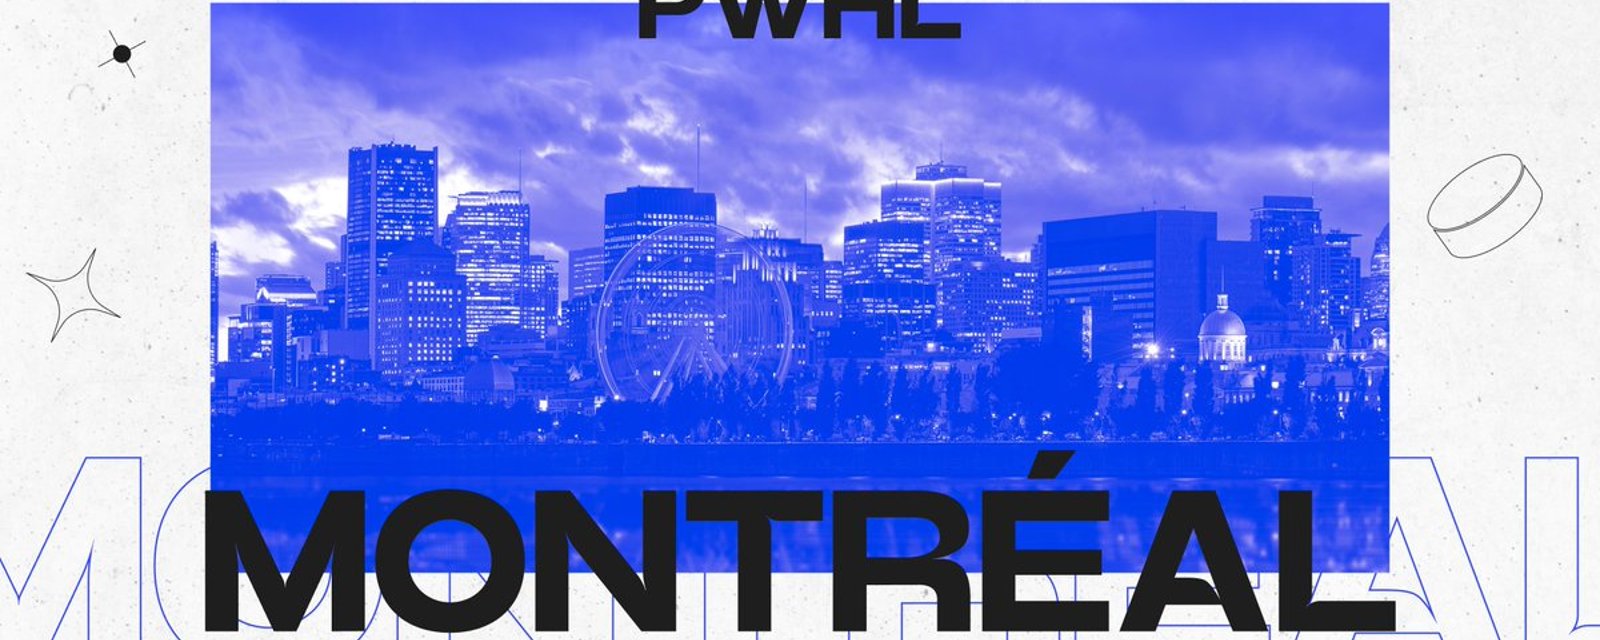 PWHL: Montréal nomme la première entraîneuse-chef de son histoire